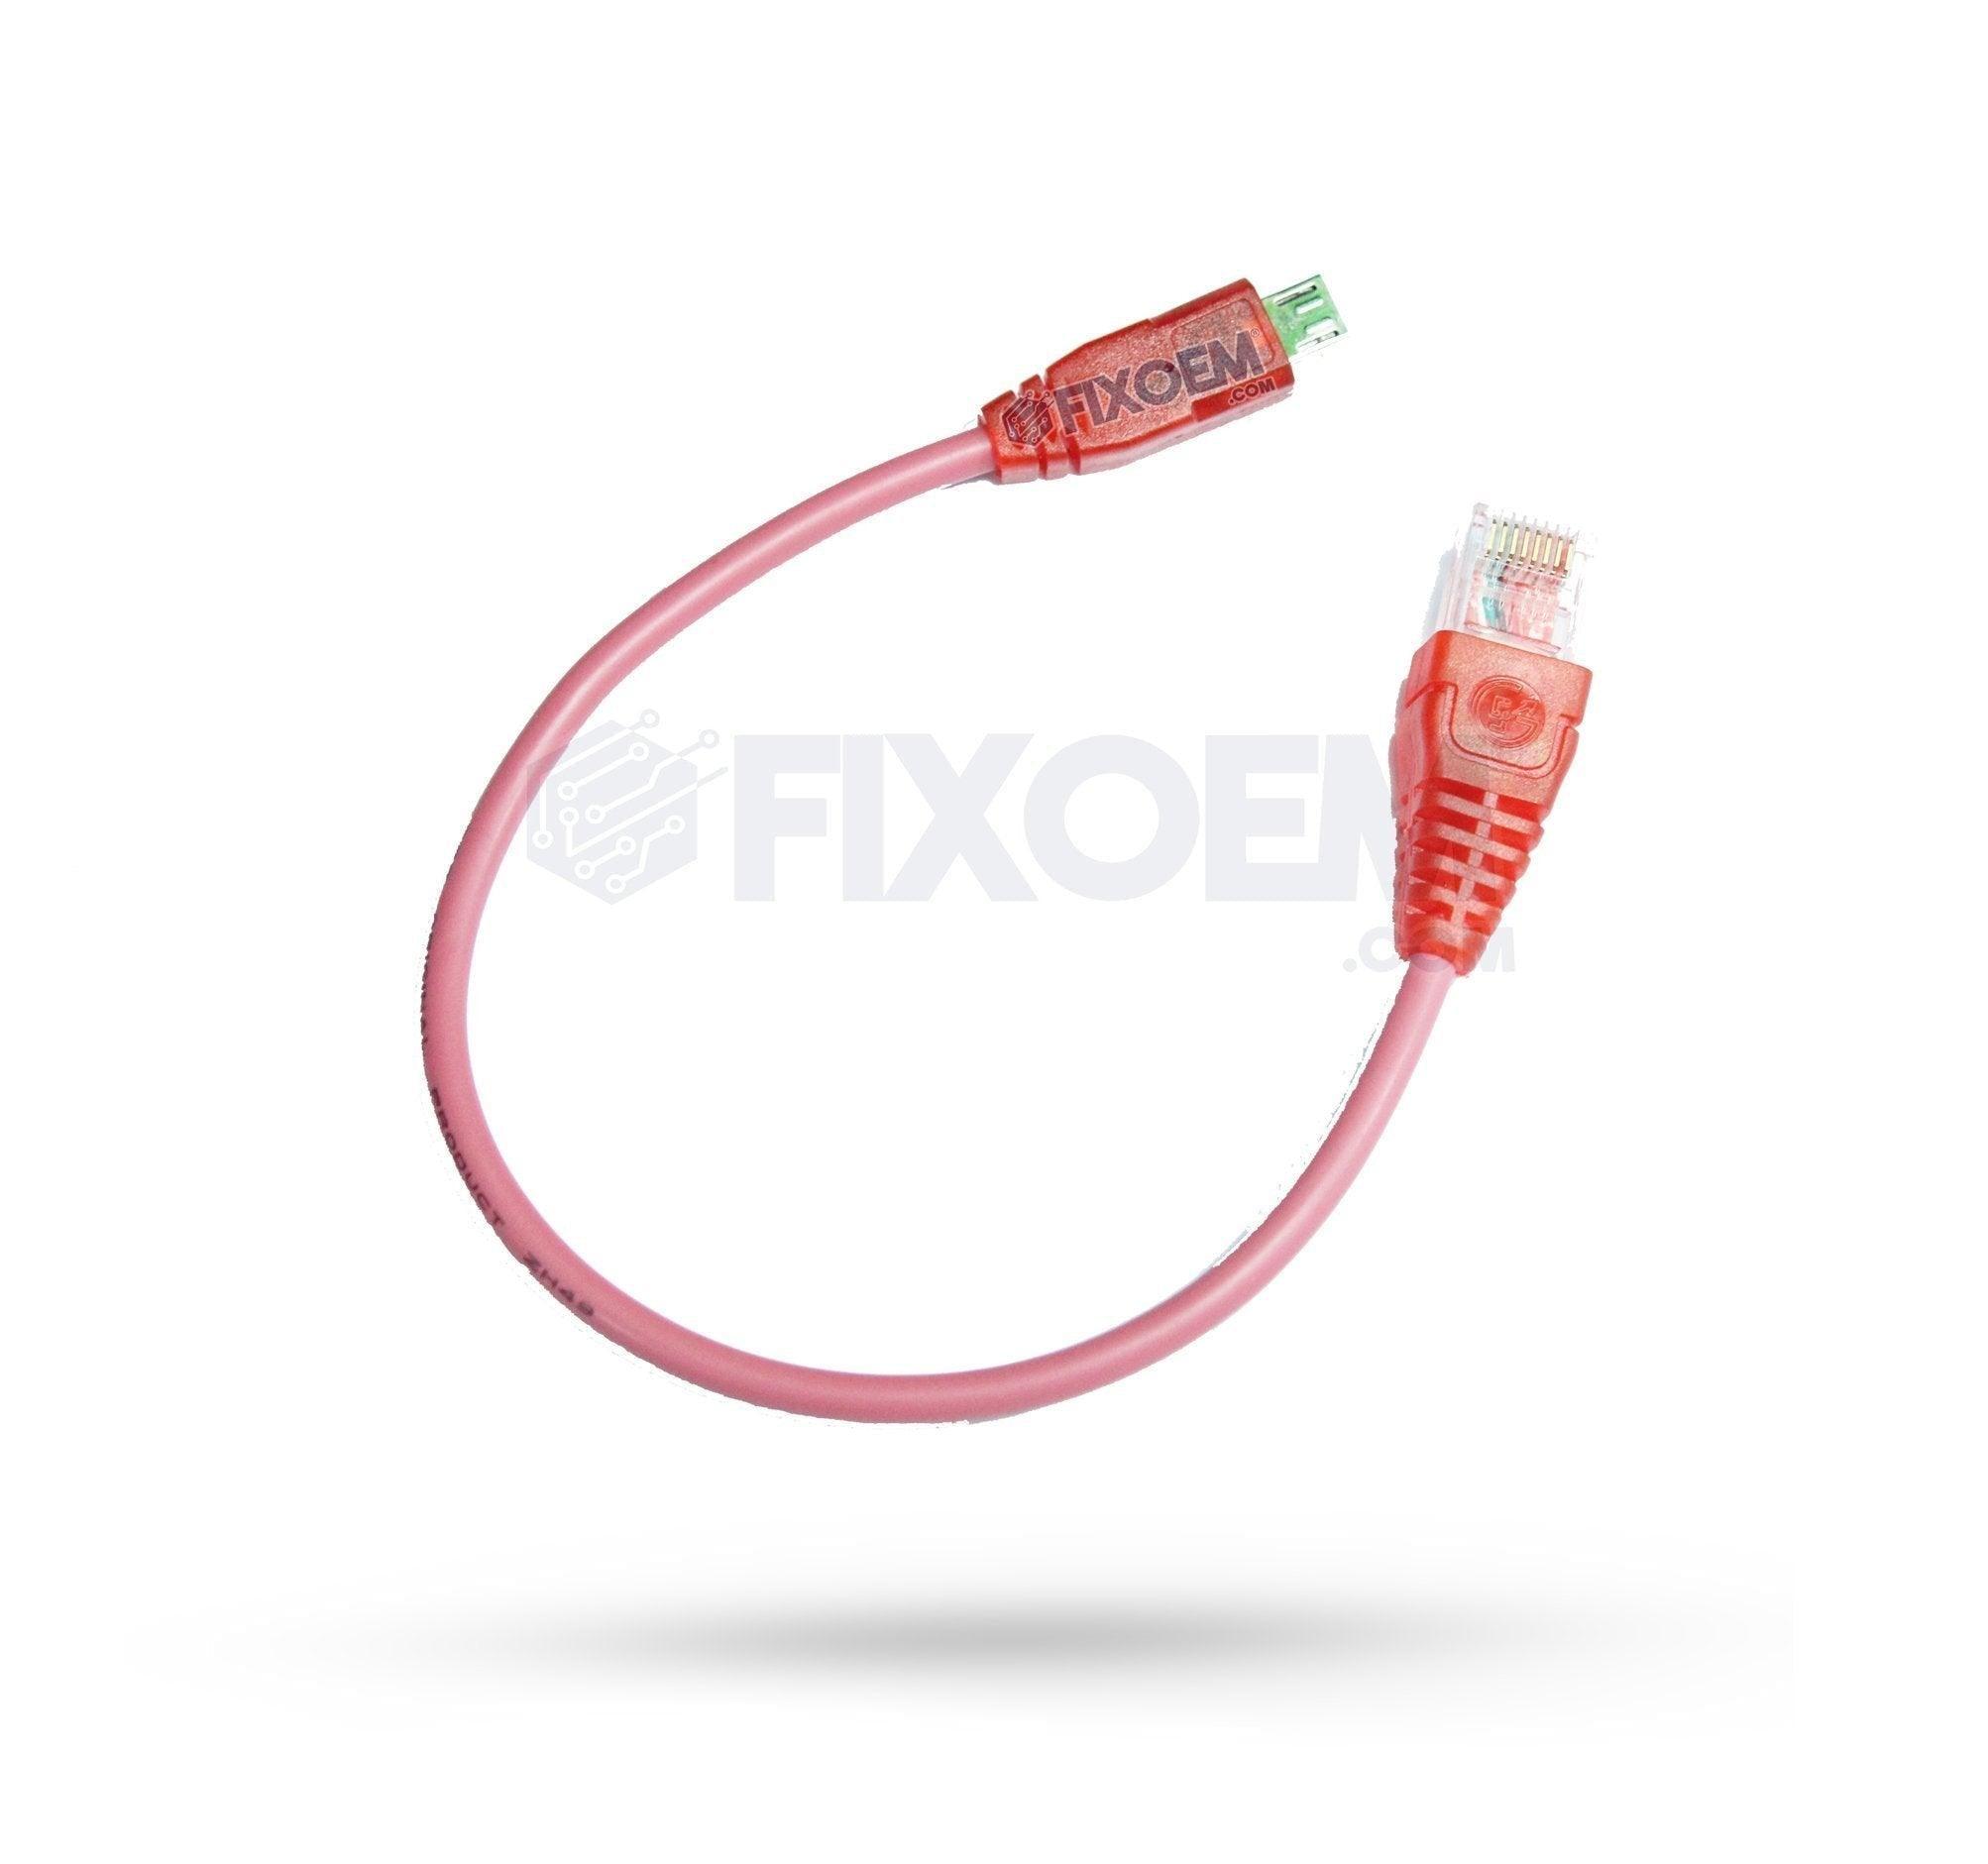 Cable Repuesto para Cajas liberación NCK / Z3X a solo $ 80.00 Refaccion y puestos celulares, refurbish y microelectronica.- FixOEM